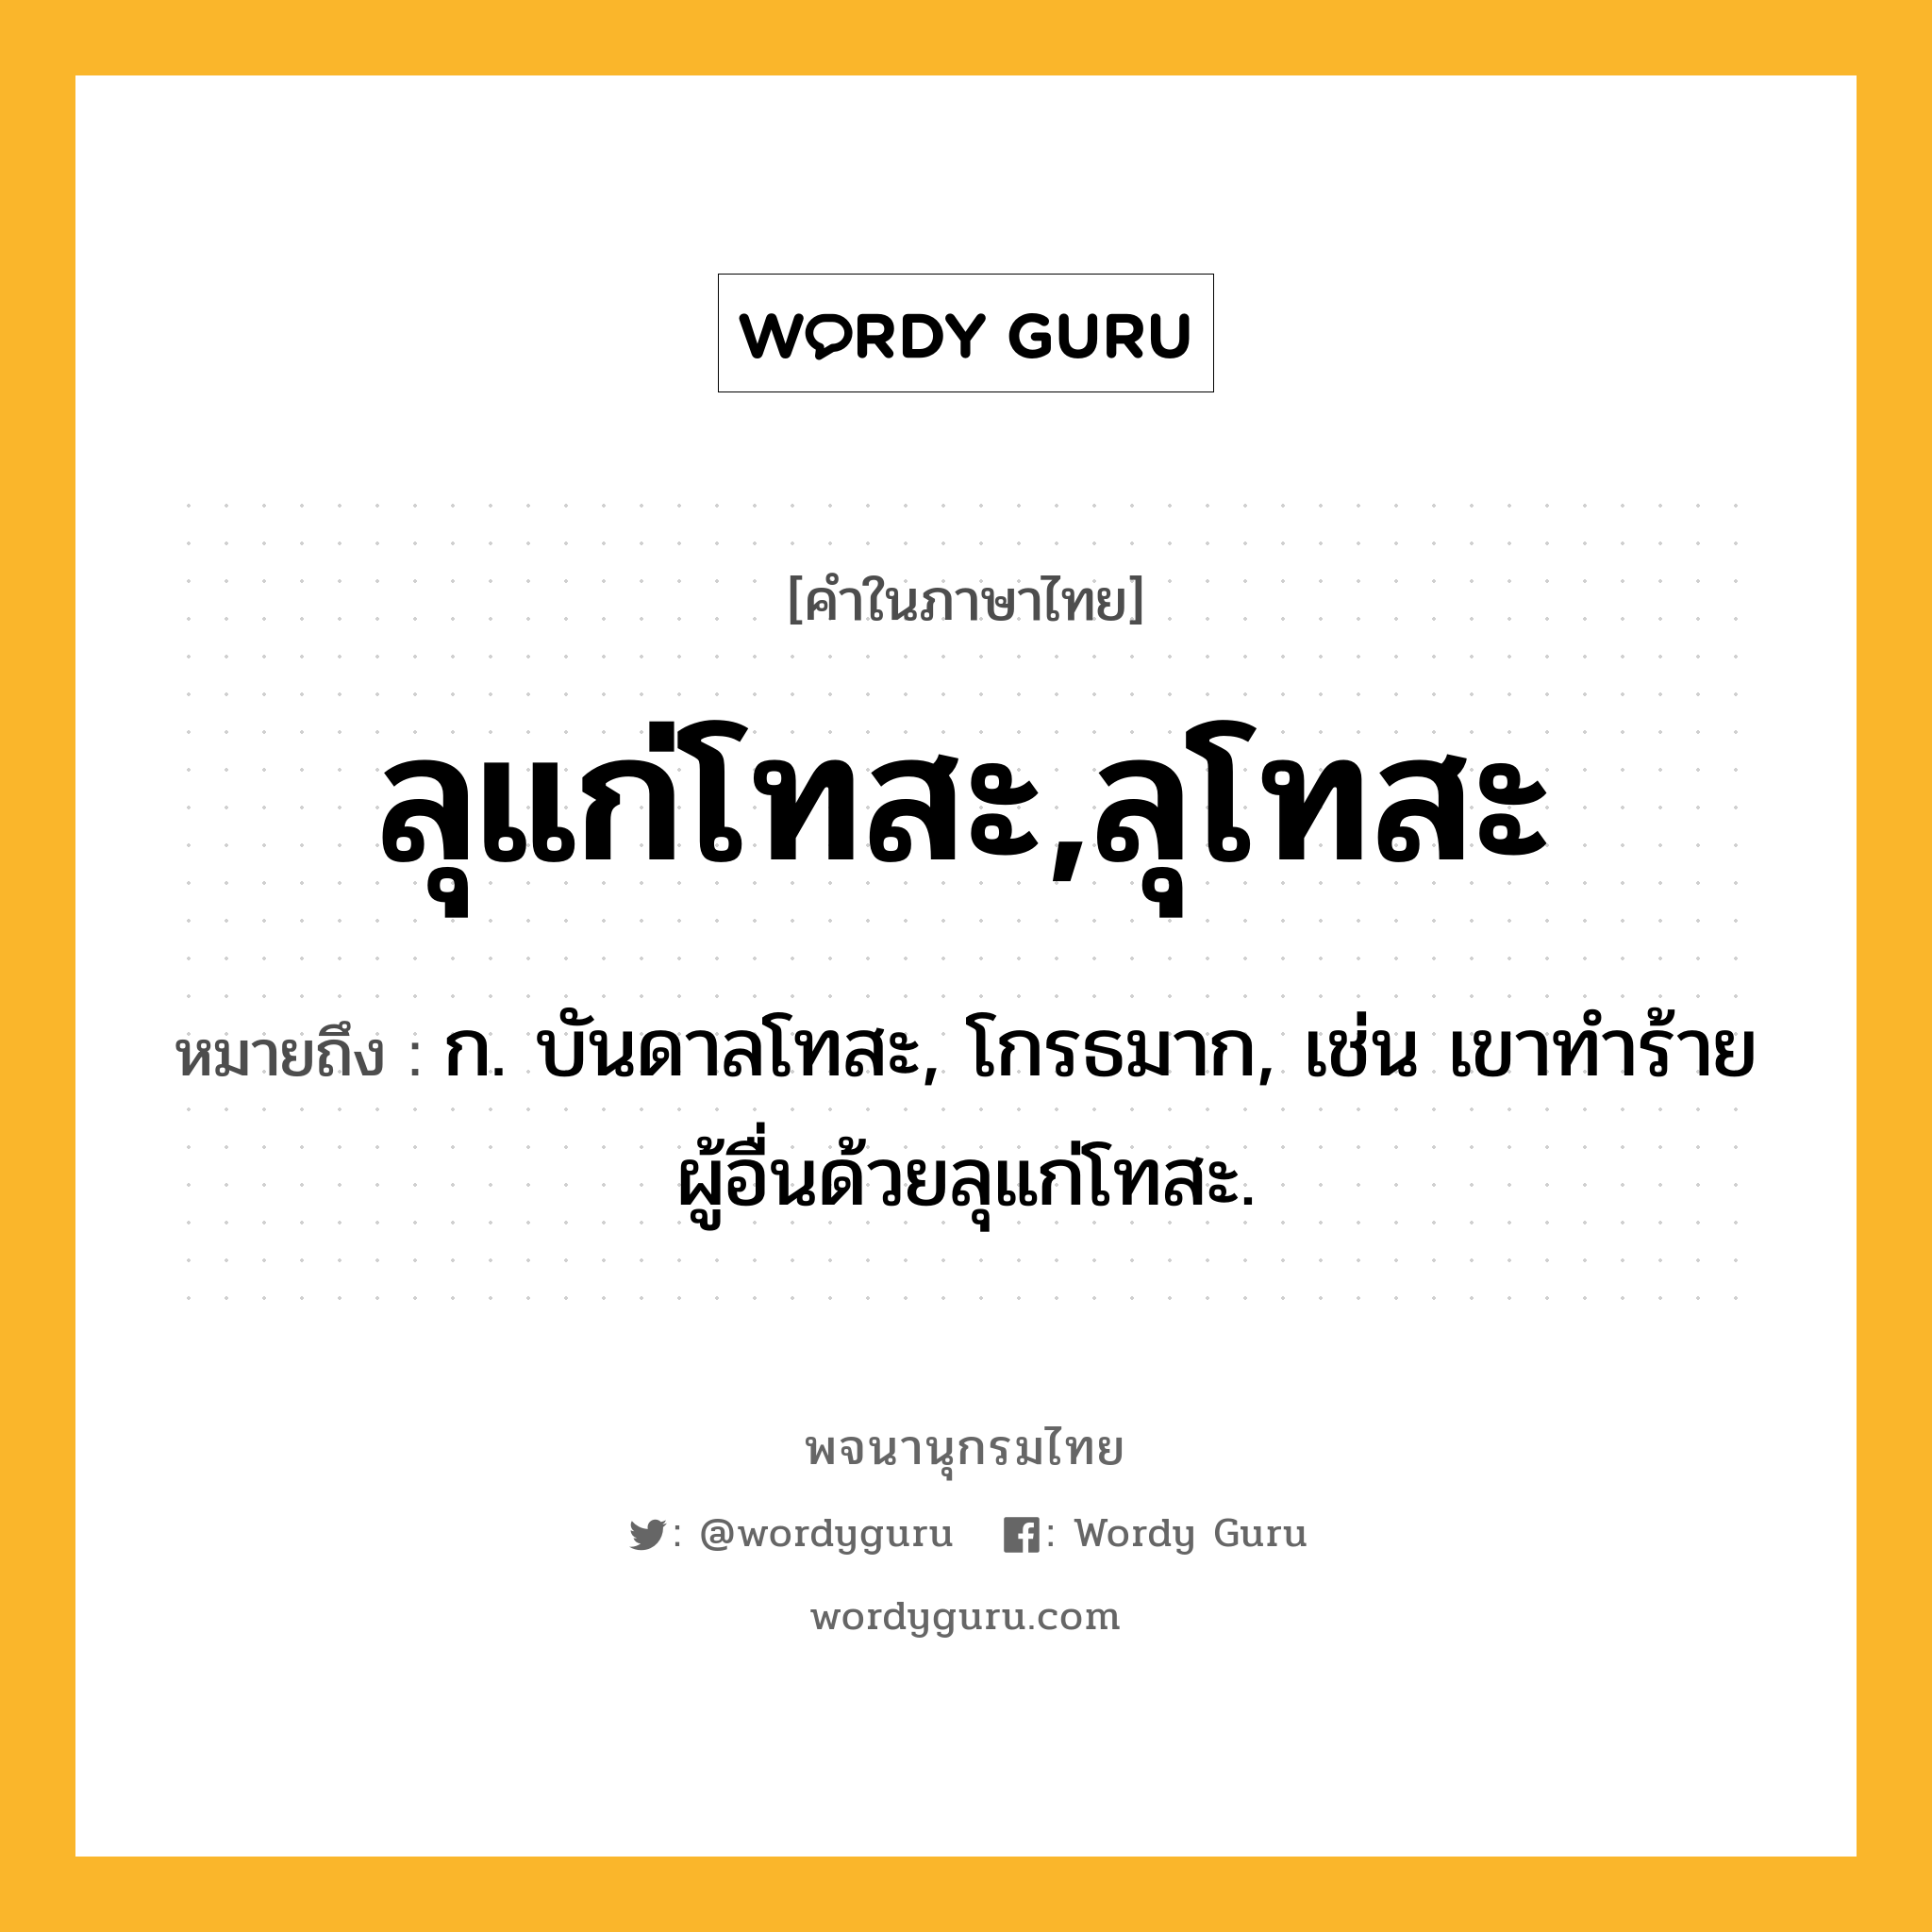 ลุแก่โทสะ,ลุโทสะ หมายถึงอะไร?, คำในภาษาไทย ลุแก่โทสะ,ลุโทสะ หมายถึง ก. บันดาลโทสะ, โกรธมาก, เช่น เขาทำร้ายผู้อื่นด้วยลุแก่โทสะ.